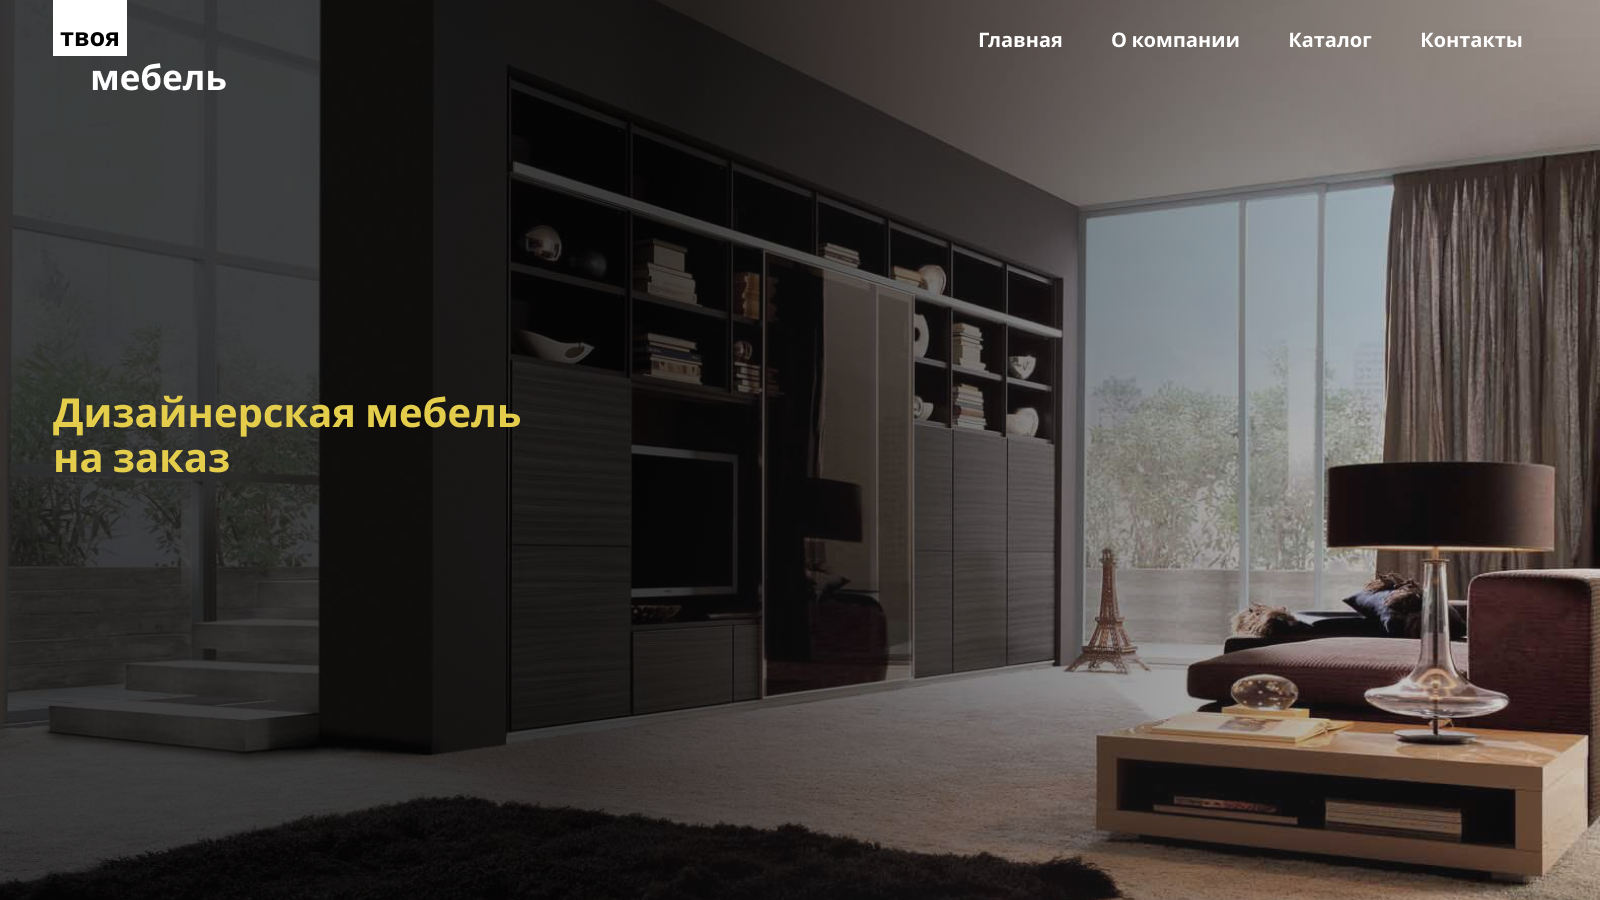 Figma шаблон, интернет-магазин по продаже мебели